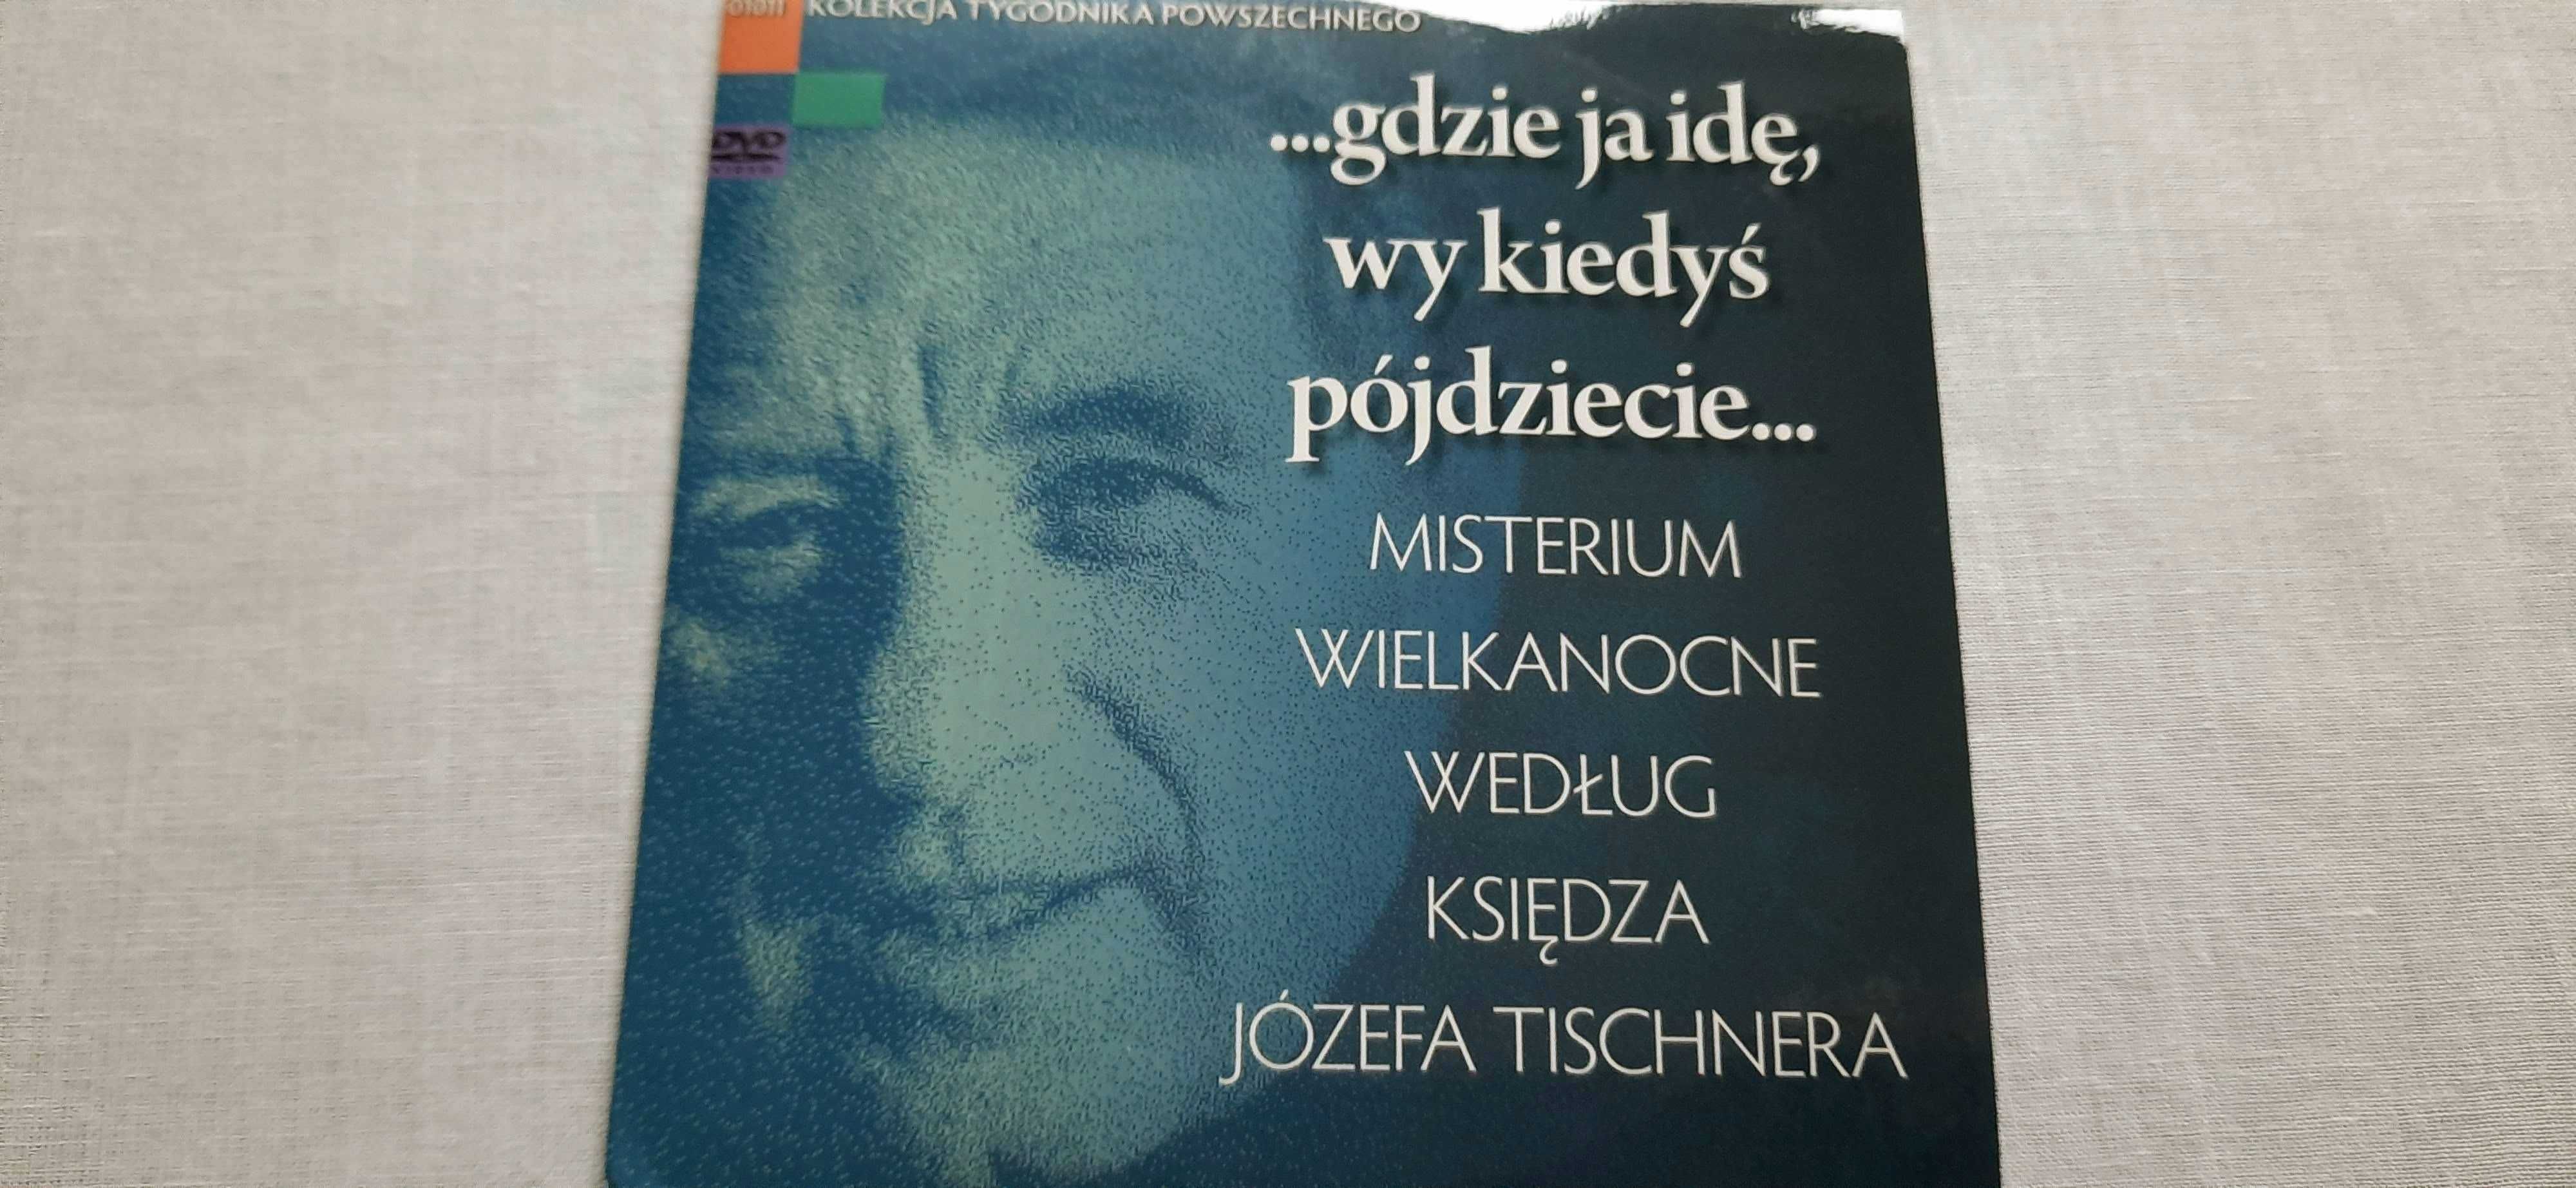 DVD Misterium wielkanocne według księdza Józefa Tischnera